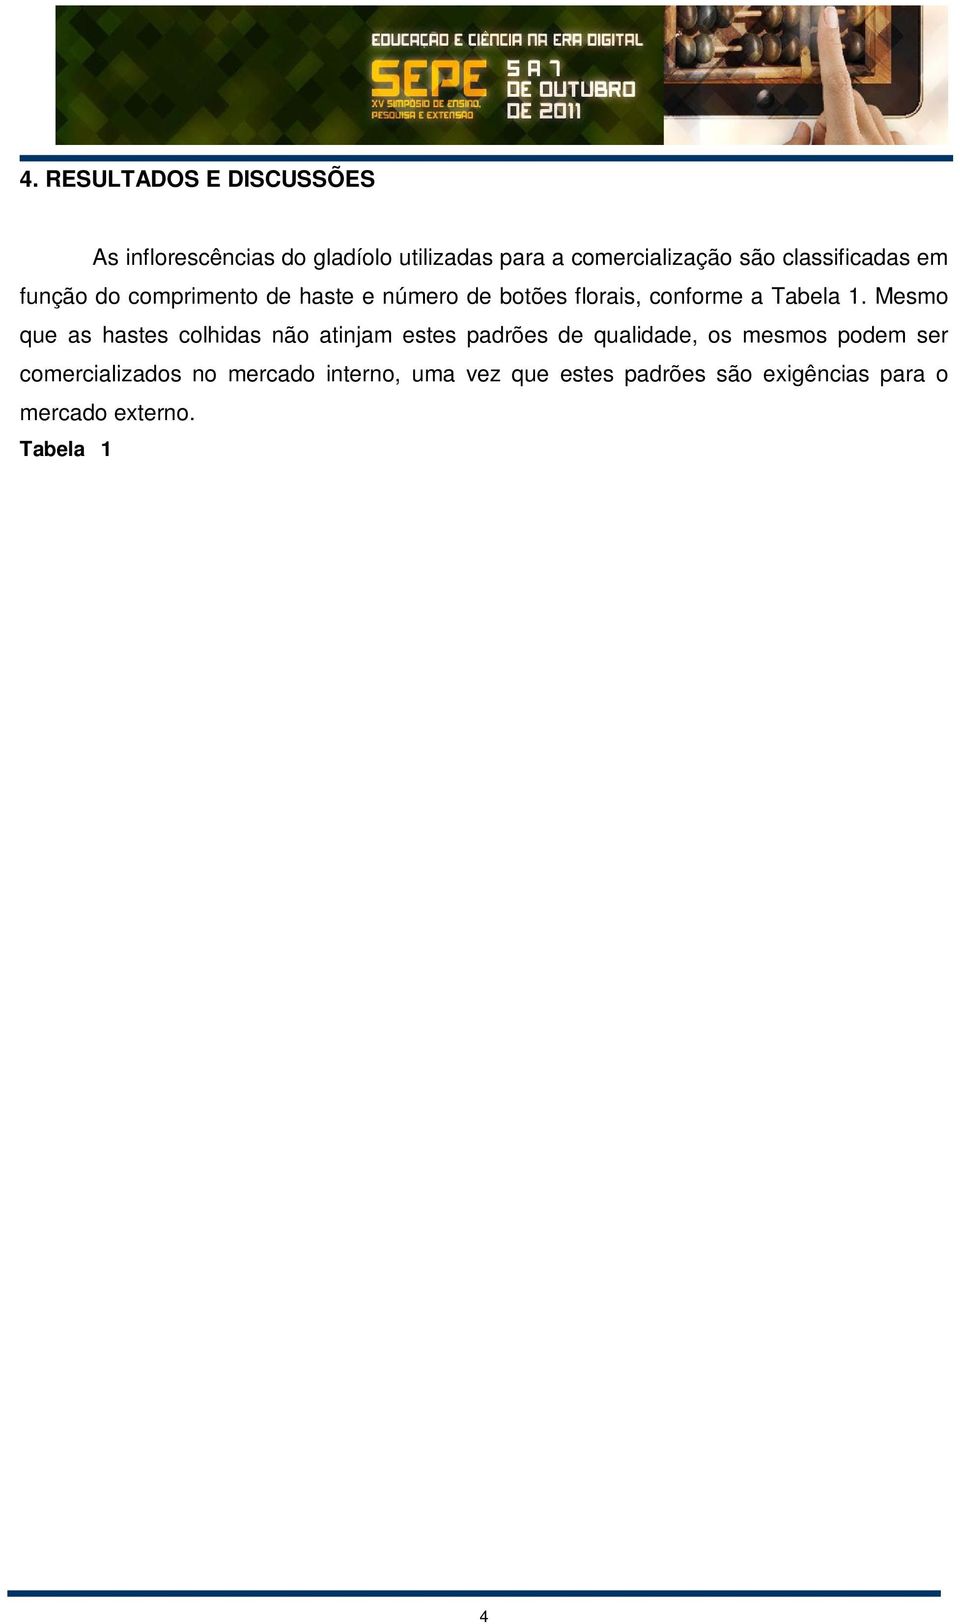 Tabela 1 Classificação das inflorescências de gladíolo para comercialização, segundo a cooperativa de Holambra São Paulo.